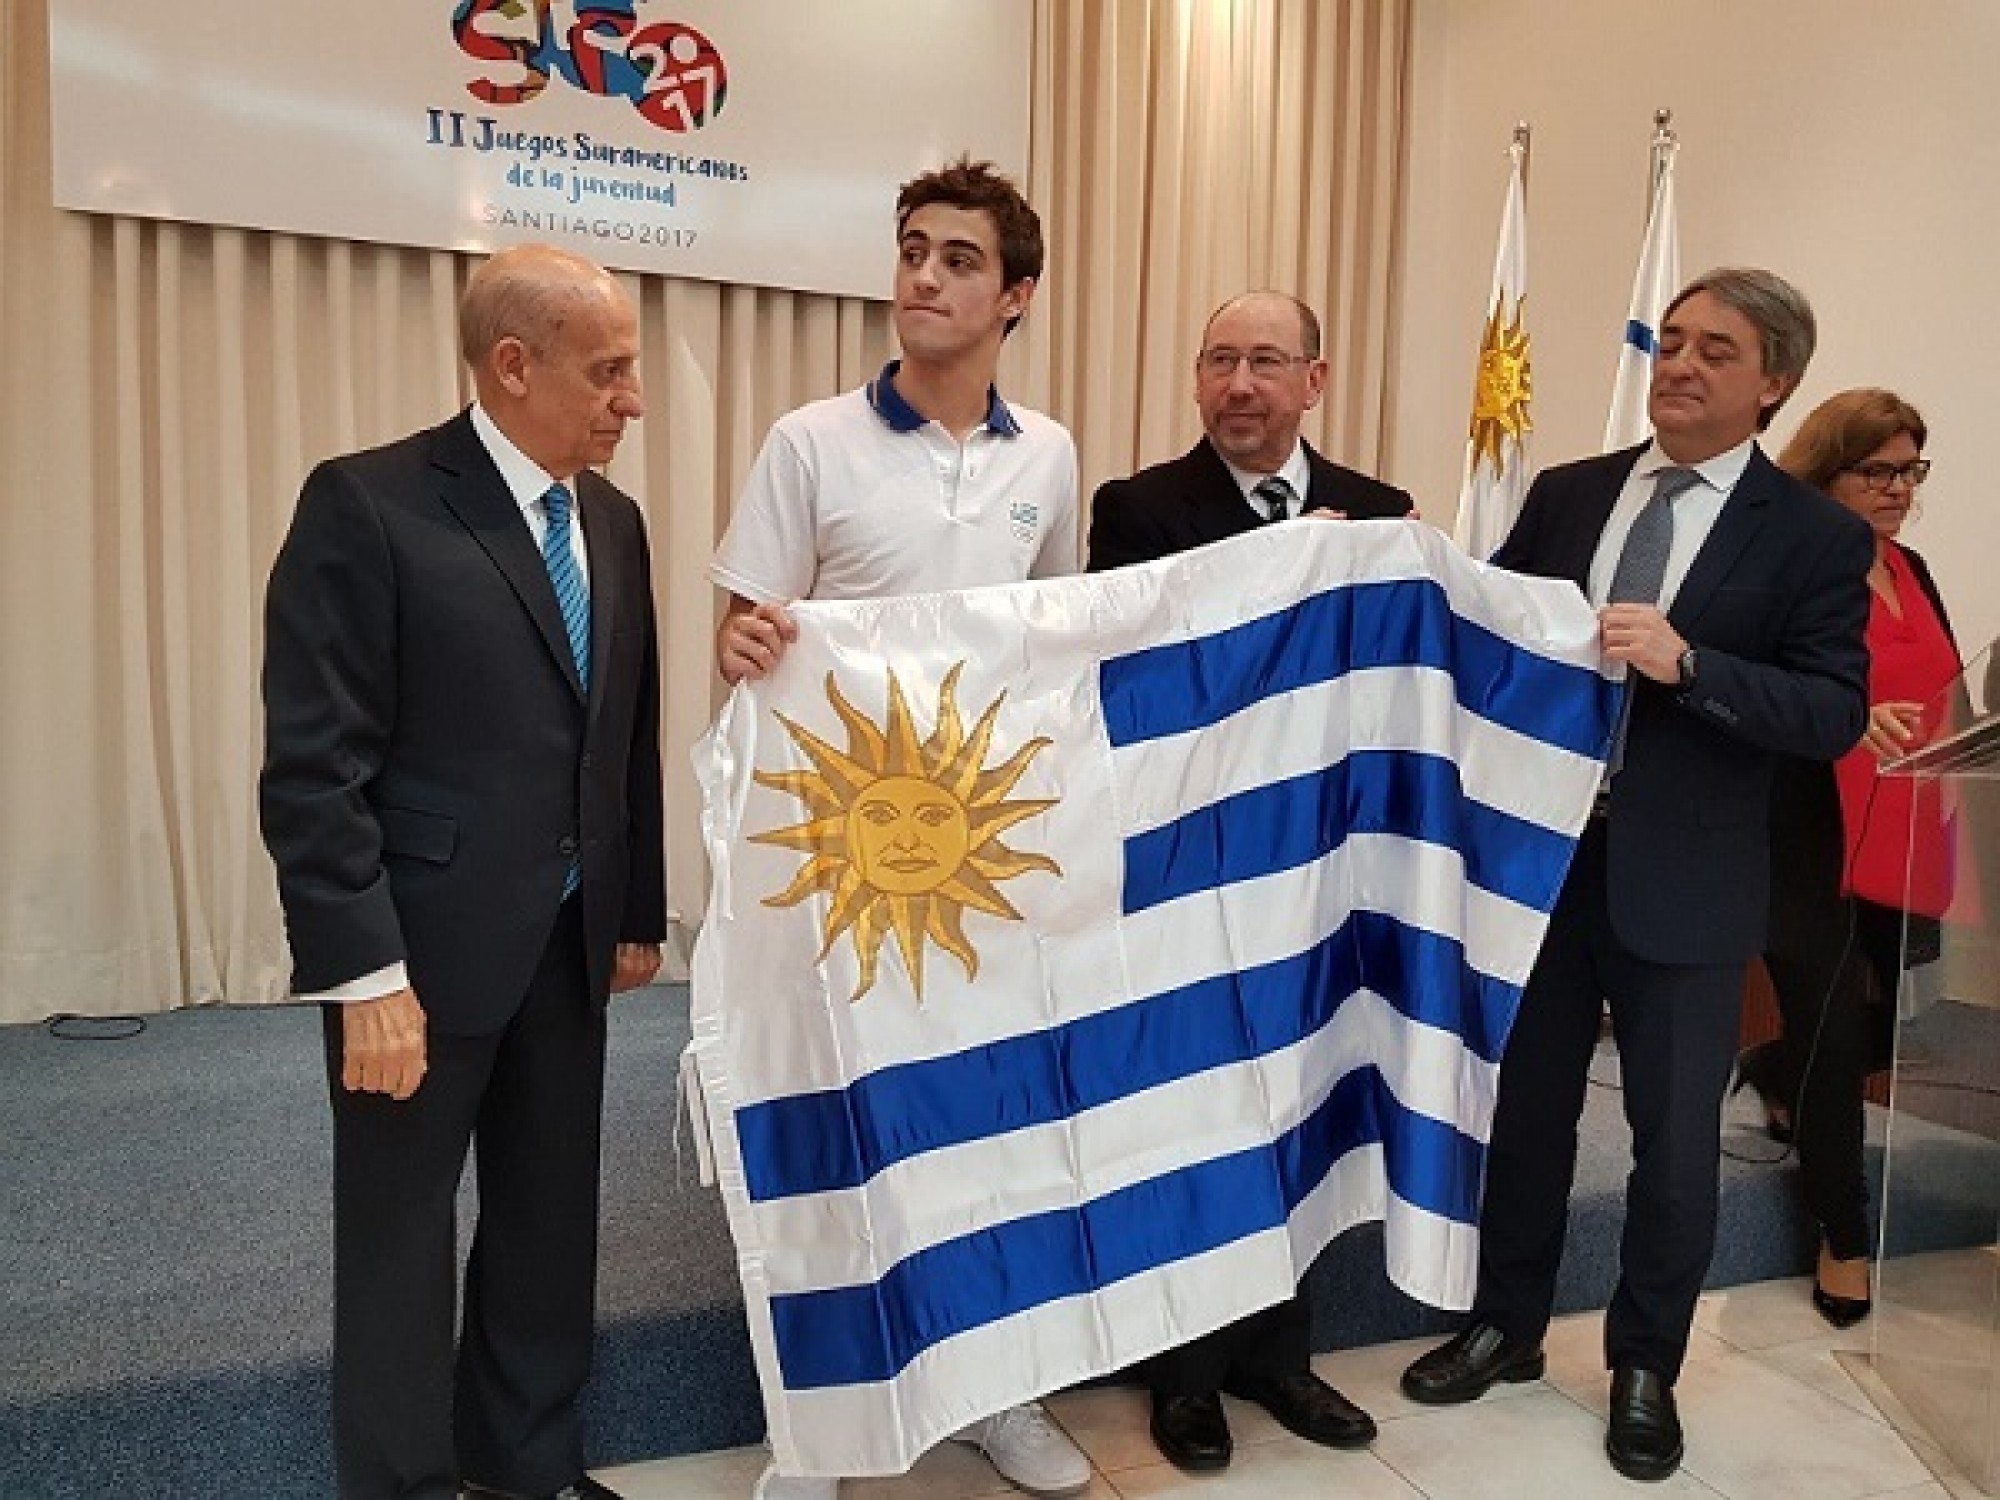 60 atletas representarán a Uruguay en la “II edición de los Juegos Suramericanos de la Juventud”.